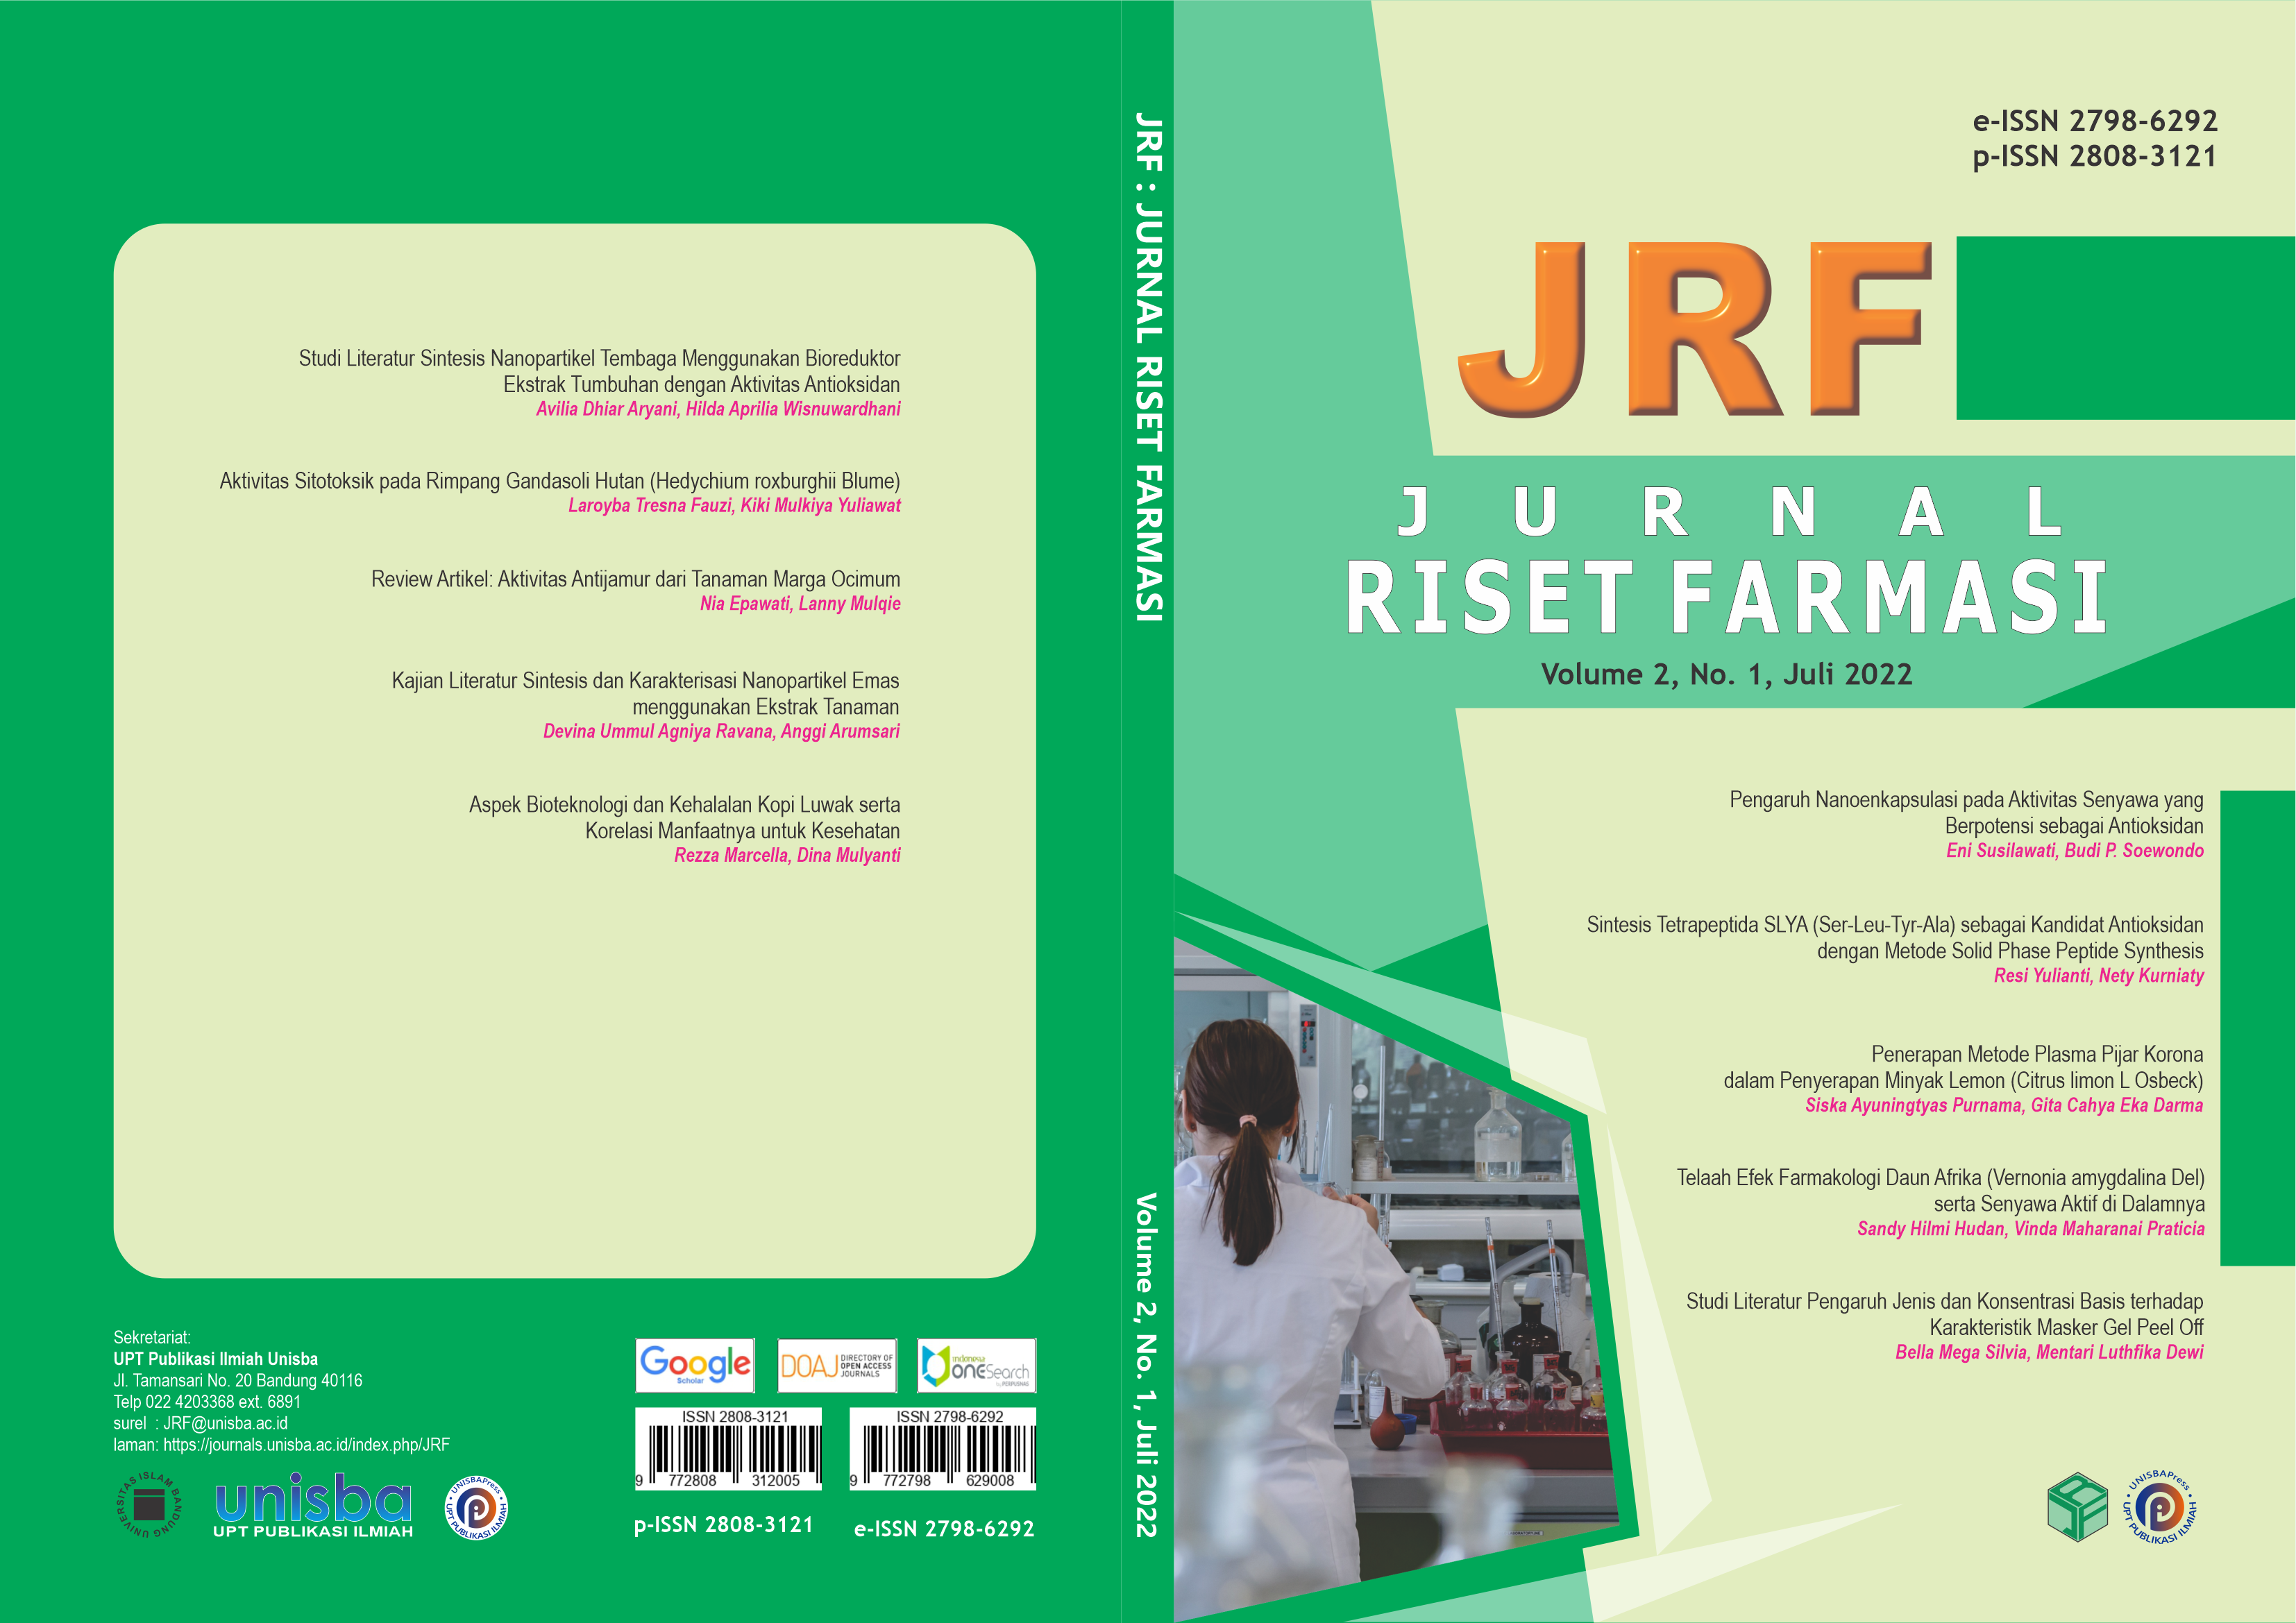 					View Volume 2, No. 1, Juli 2022, Jurnal Riset Farmasi (JRF)
				